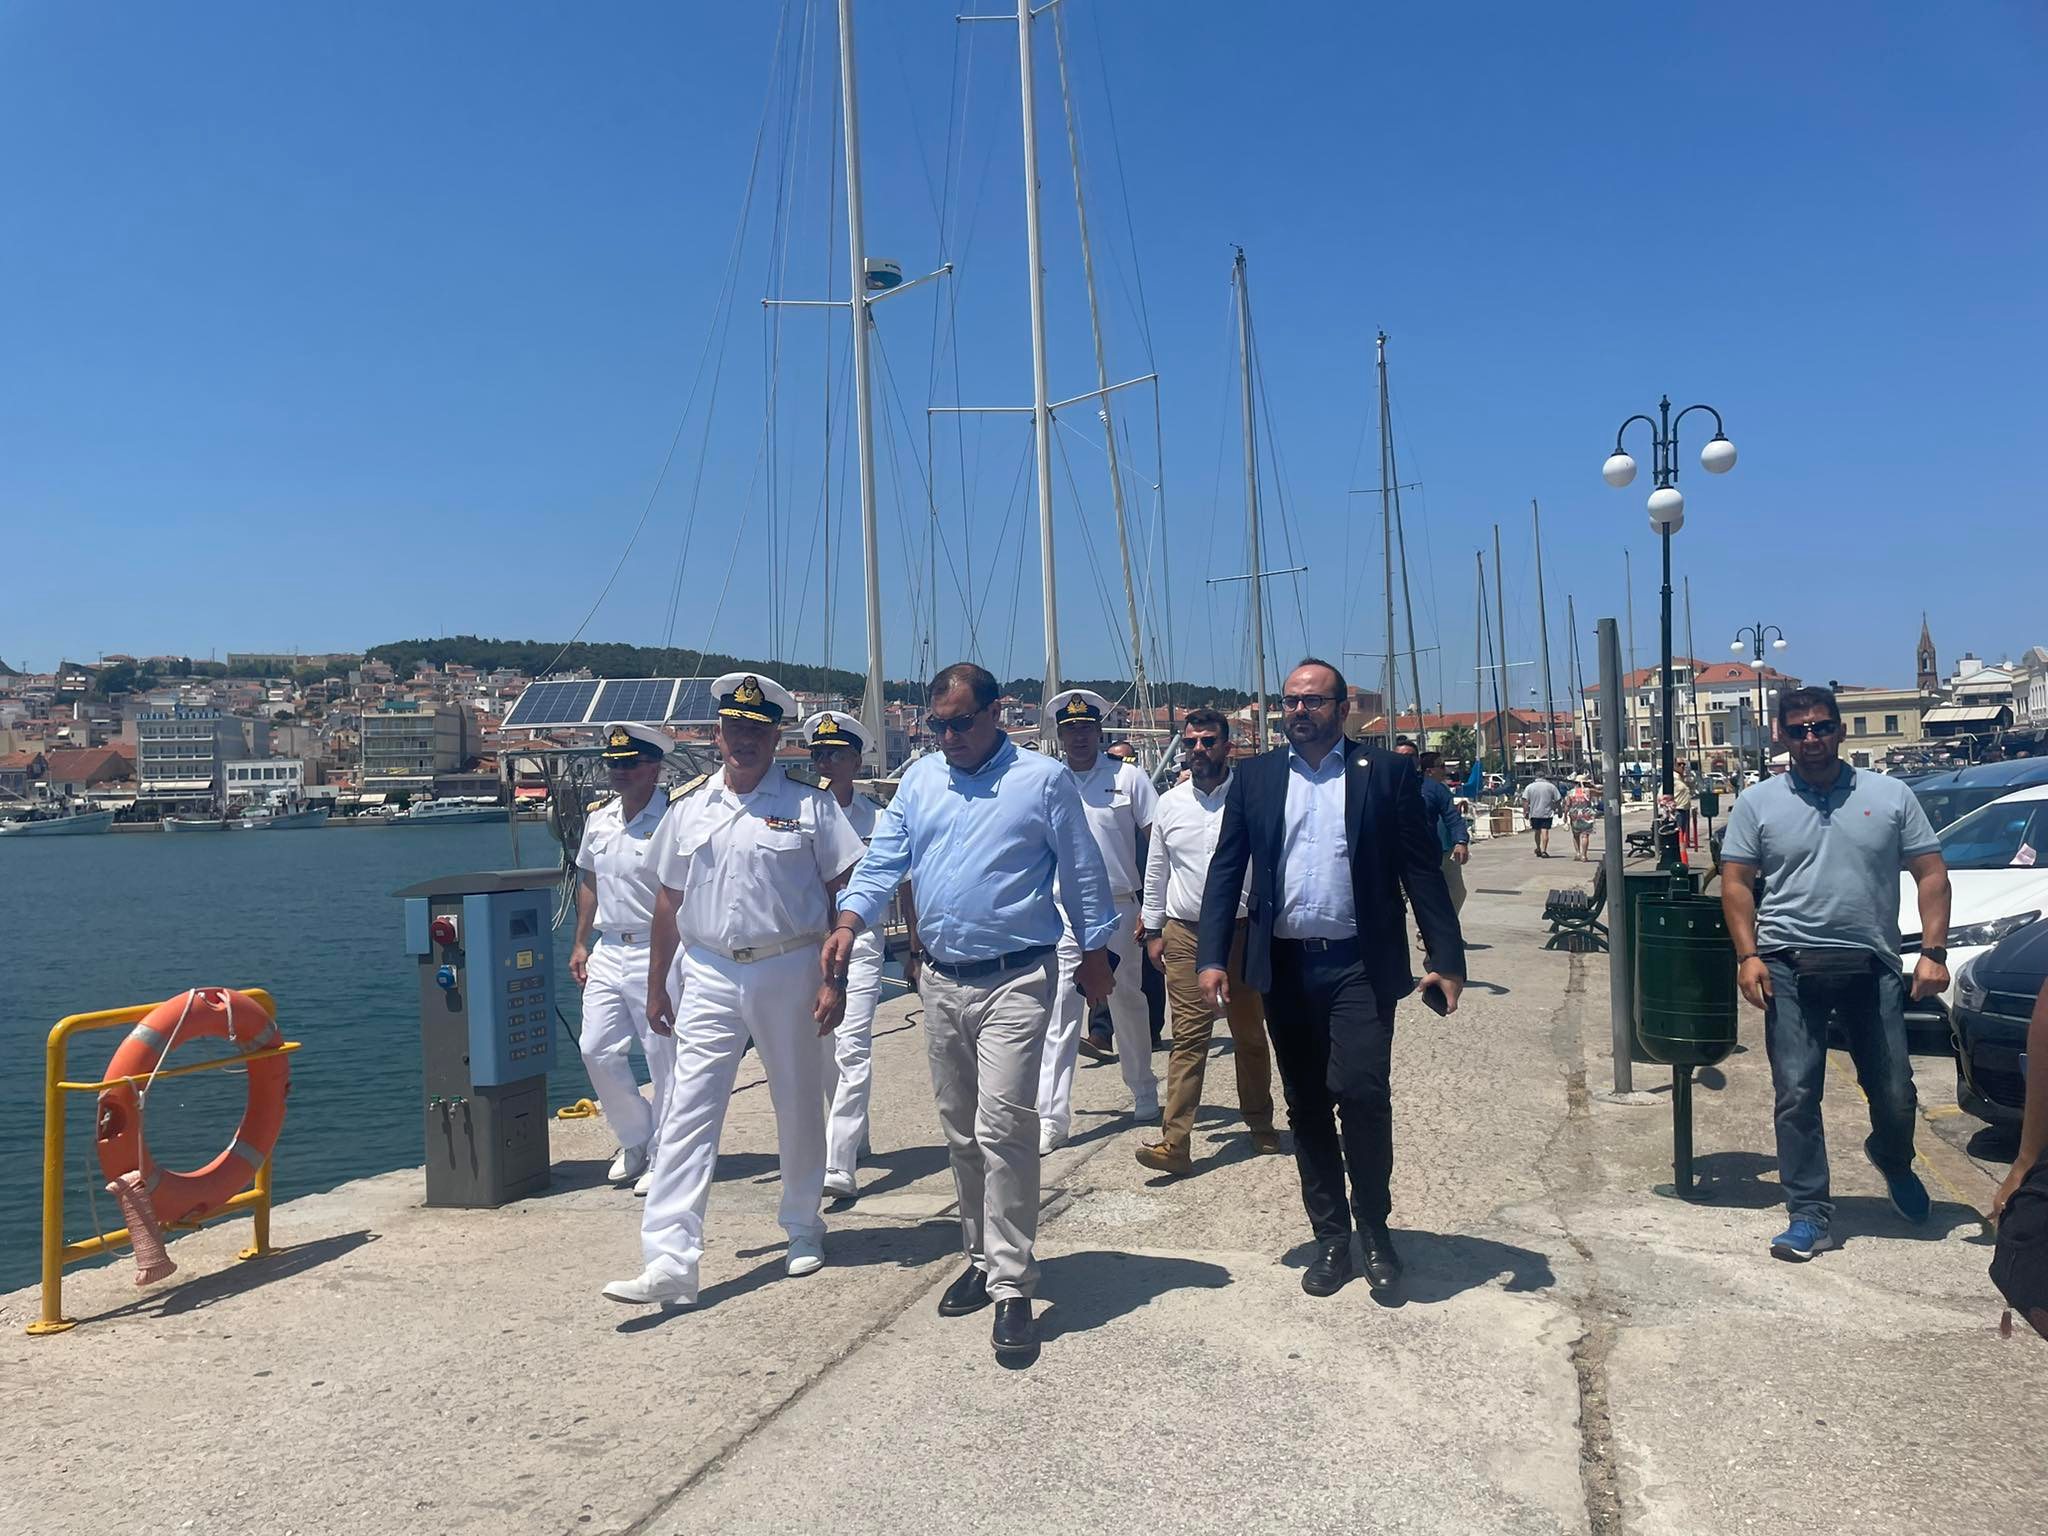 Επίσκεψη του Υφυπουργού Ναυτιλίας και του Υπαρχηγού Λ.Σ στα σκάφη του λιμενικού στη Μυτιλήνη